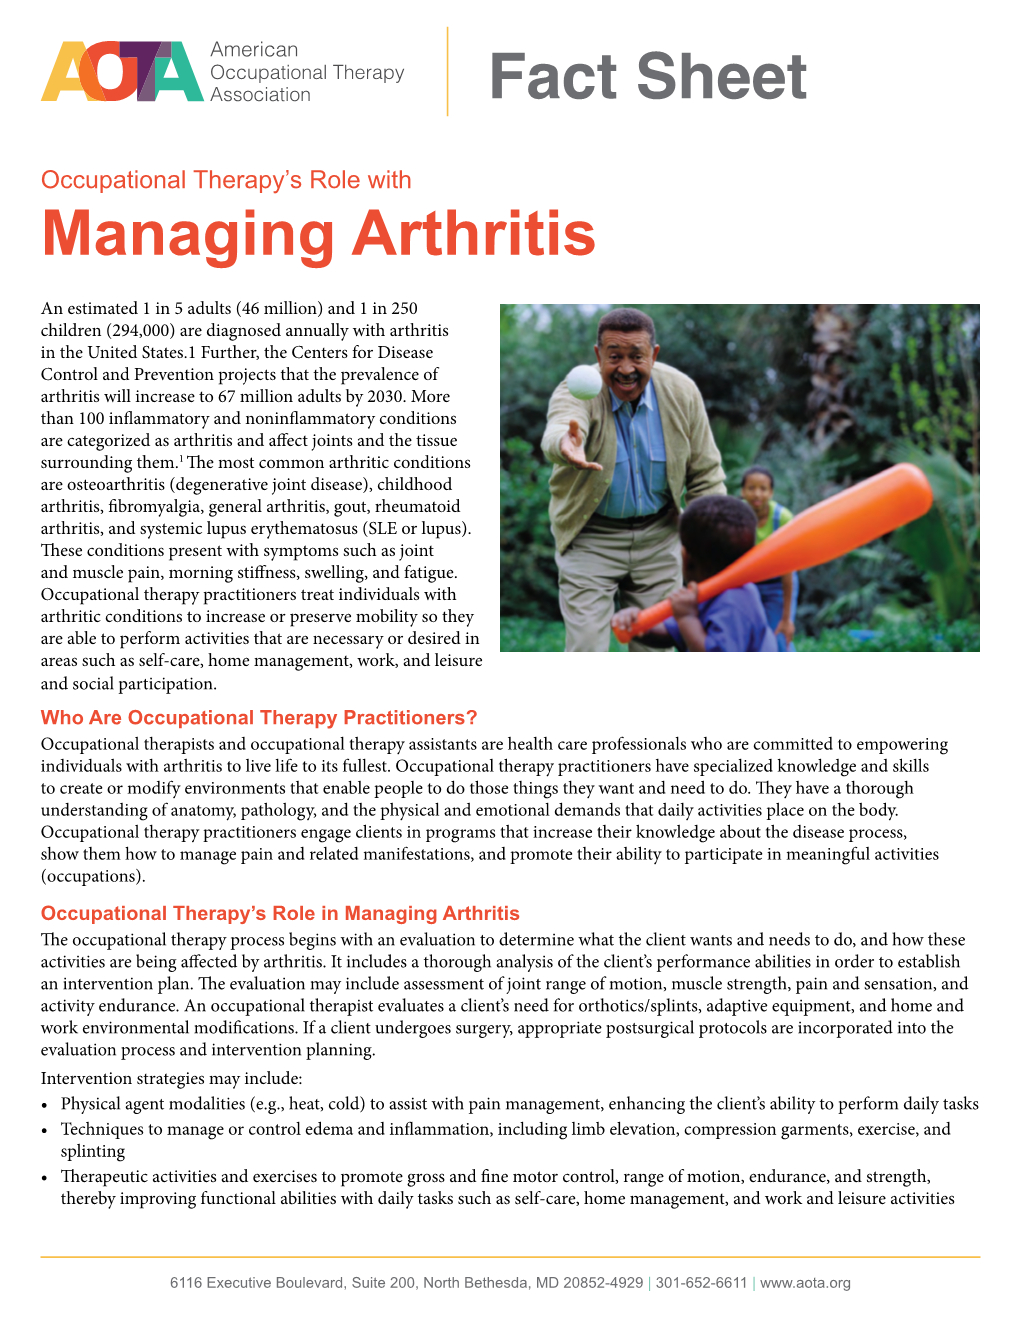 Managing Arthritis Fact Sheet